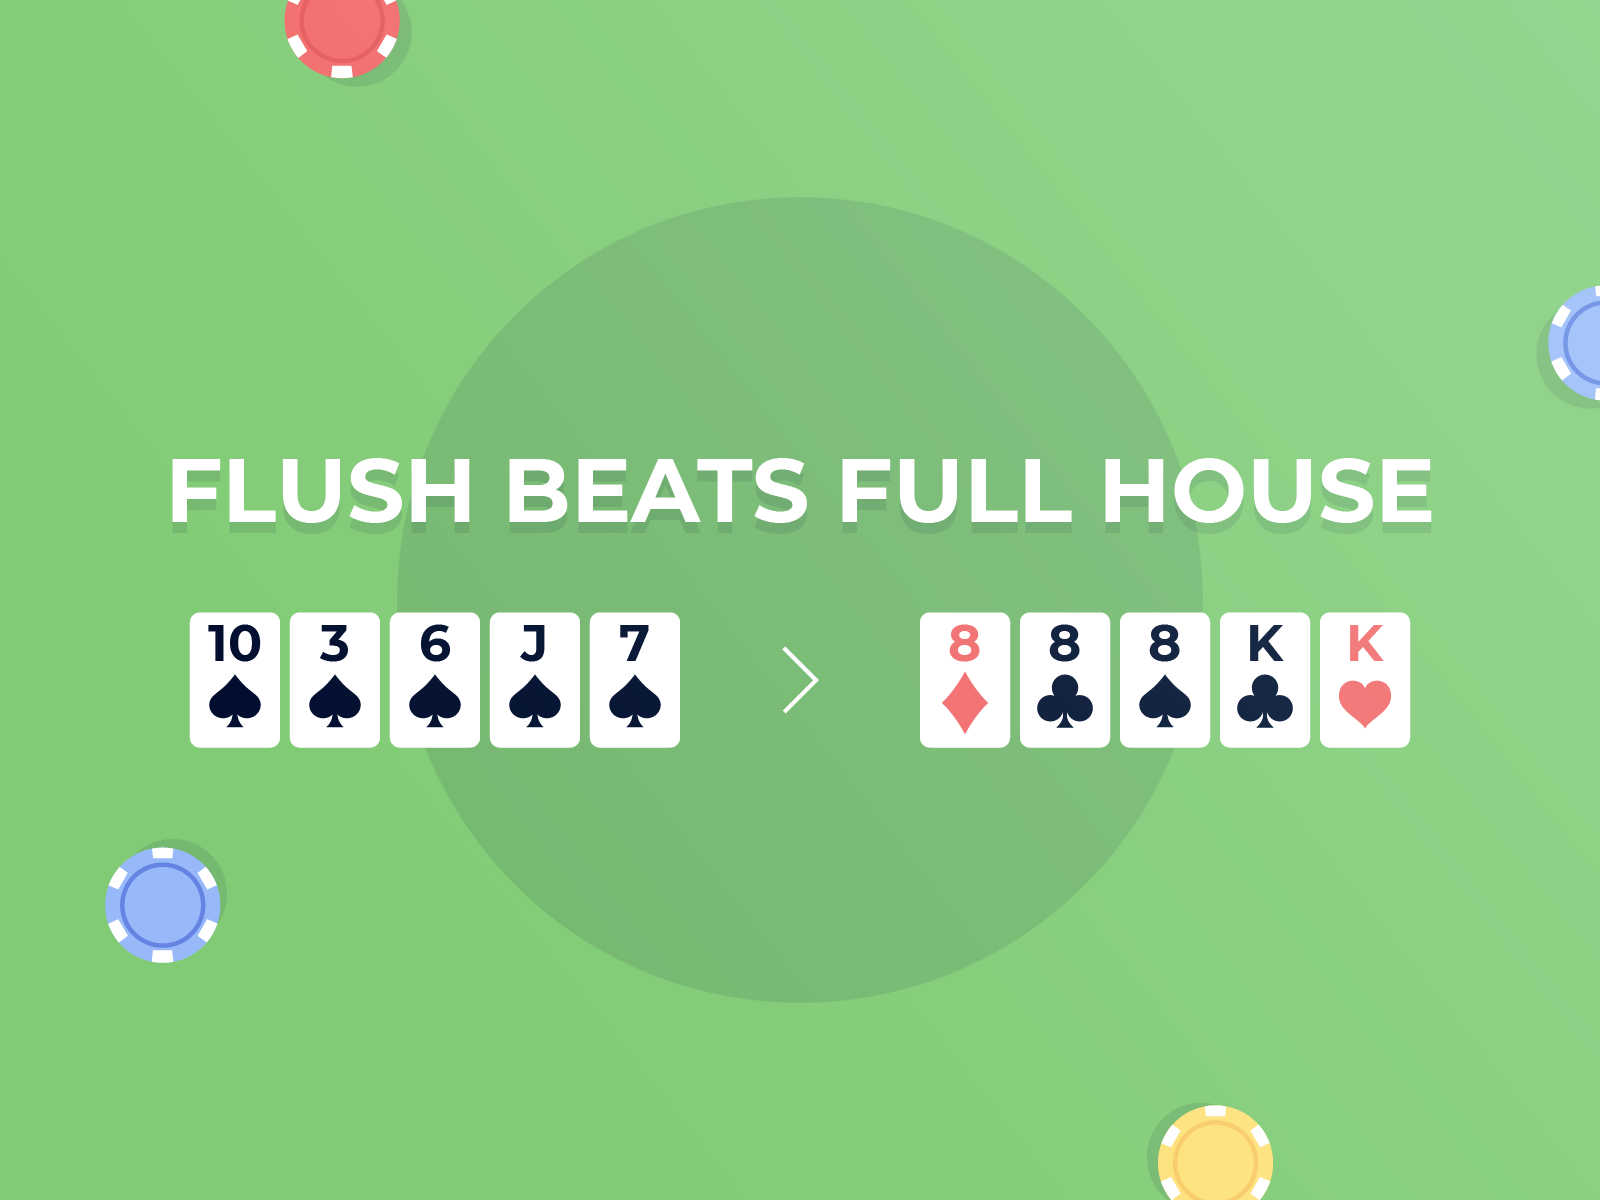 flush beats full house in short deck poker